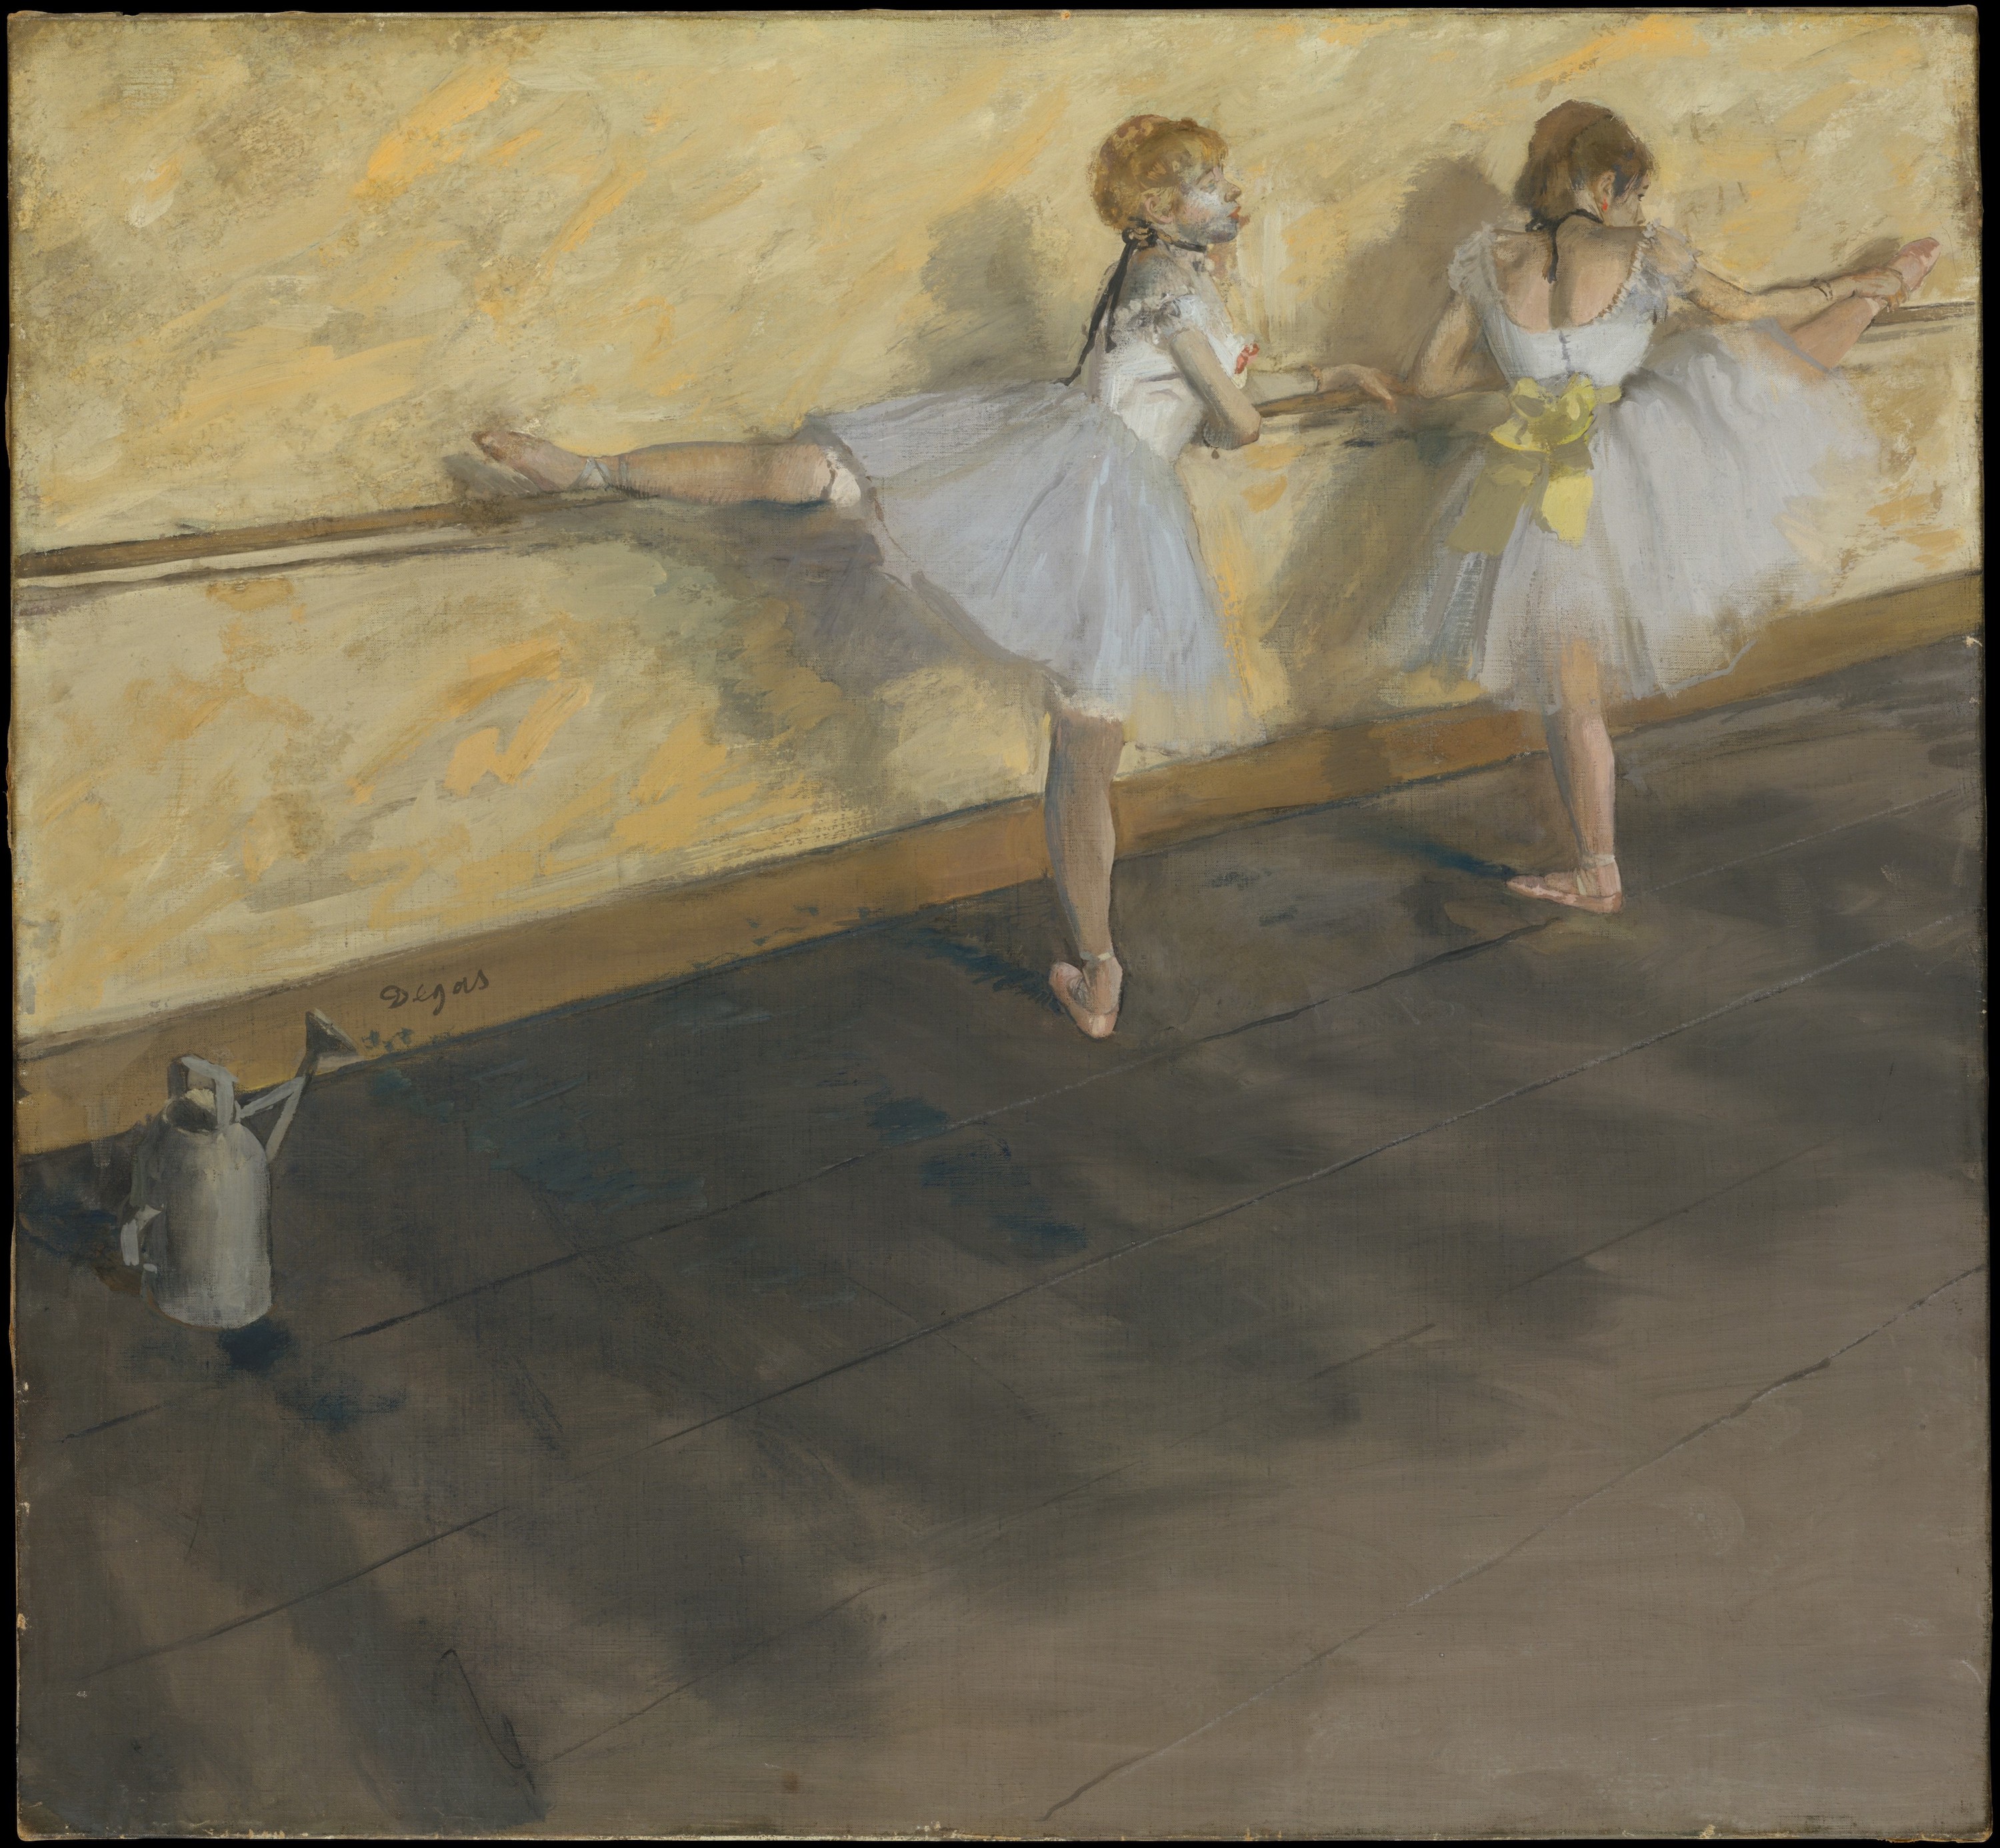 于扶手杠上练习的舞者 by Edgar Degas - 1877 - 75.6 x 81.3 cm 